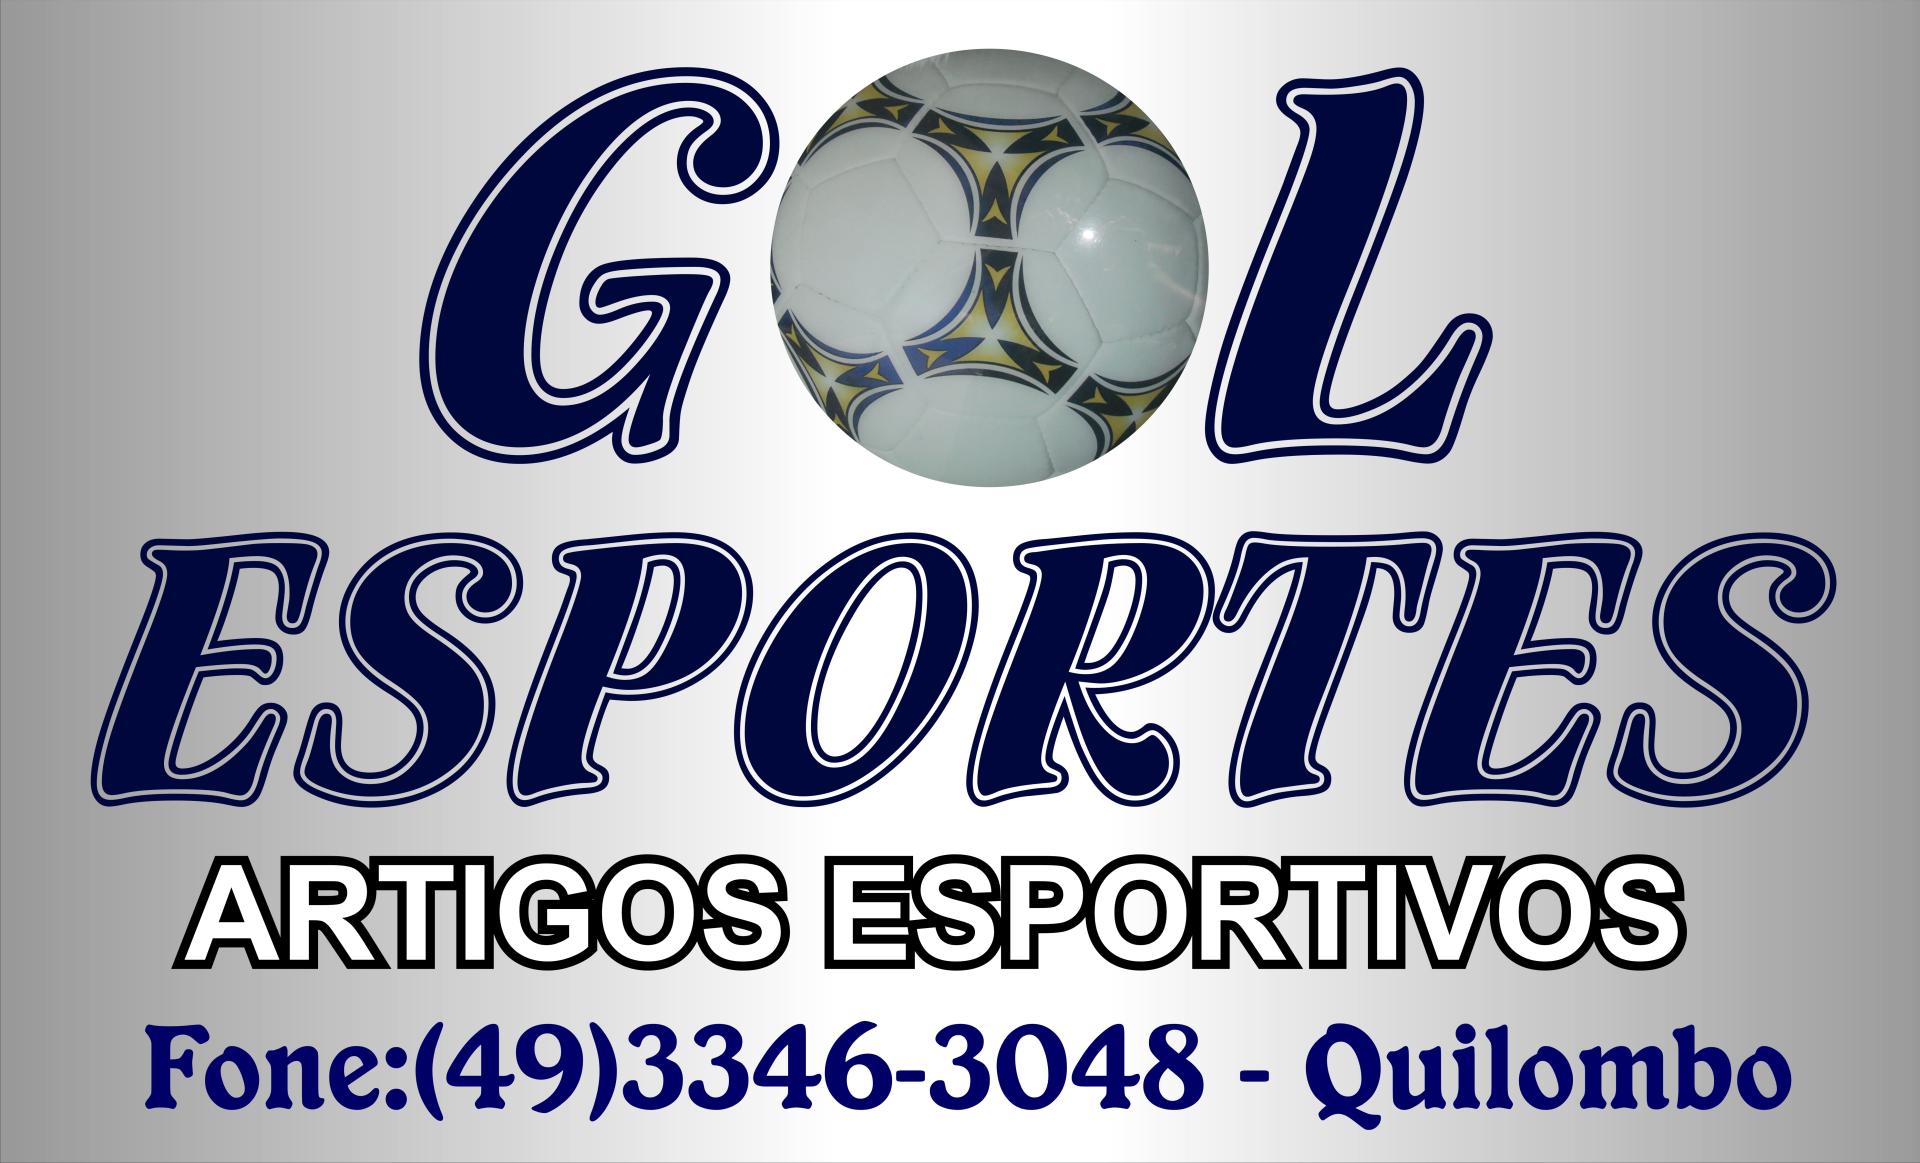 Gol Esportes - Há 32 anos em Quilombo/SC